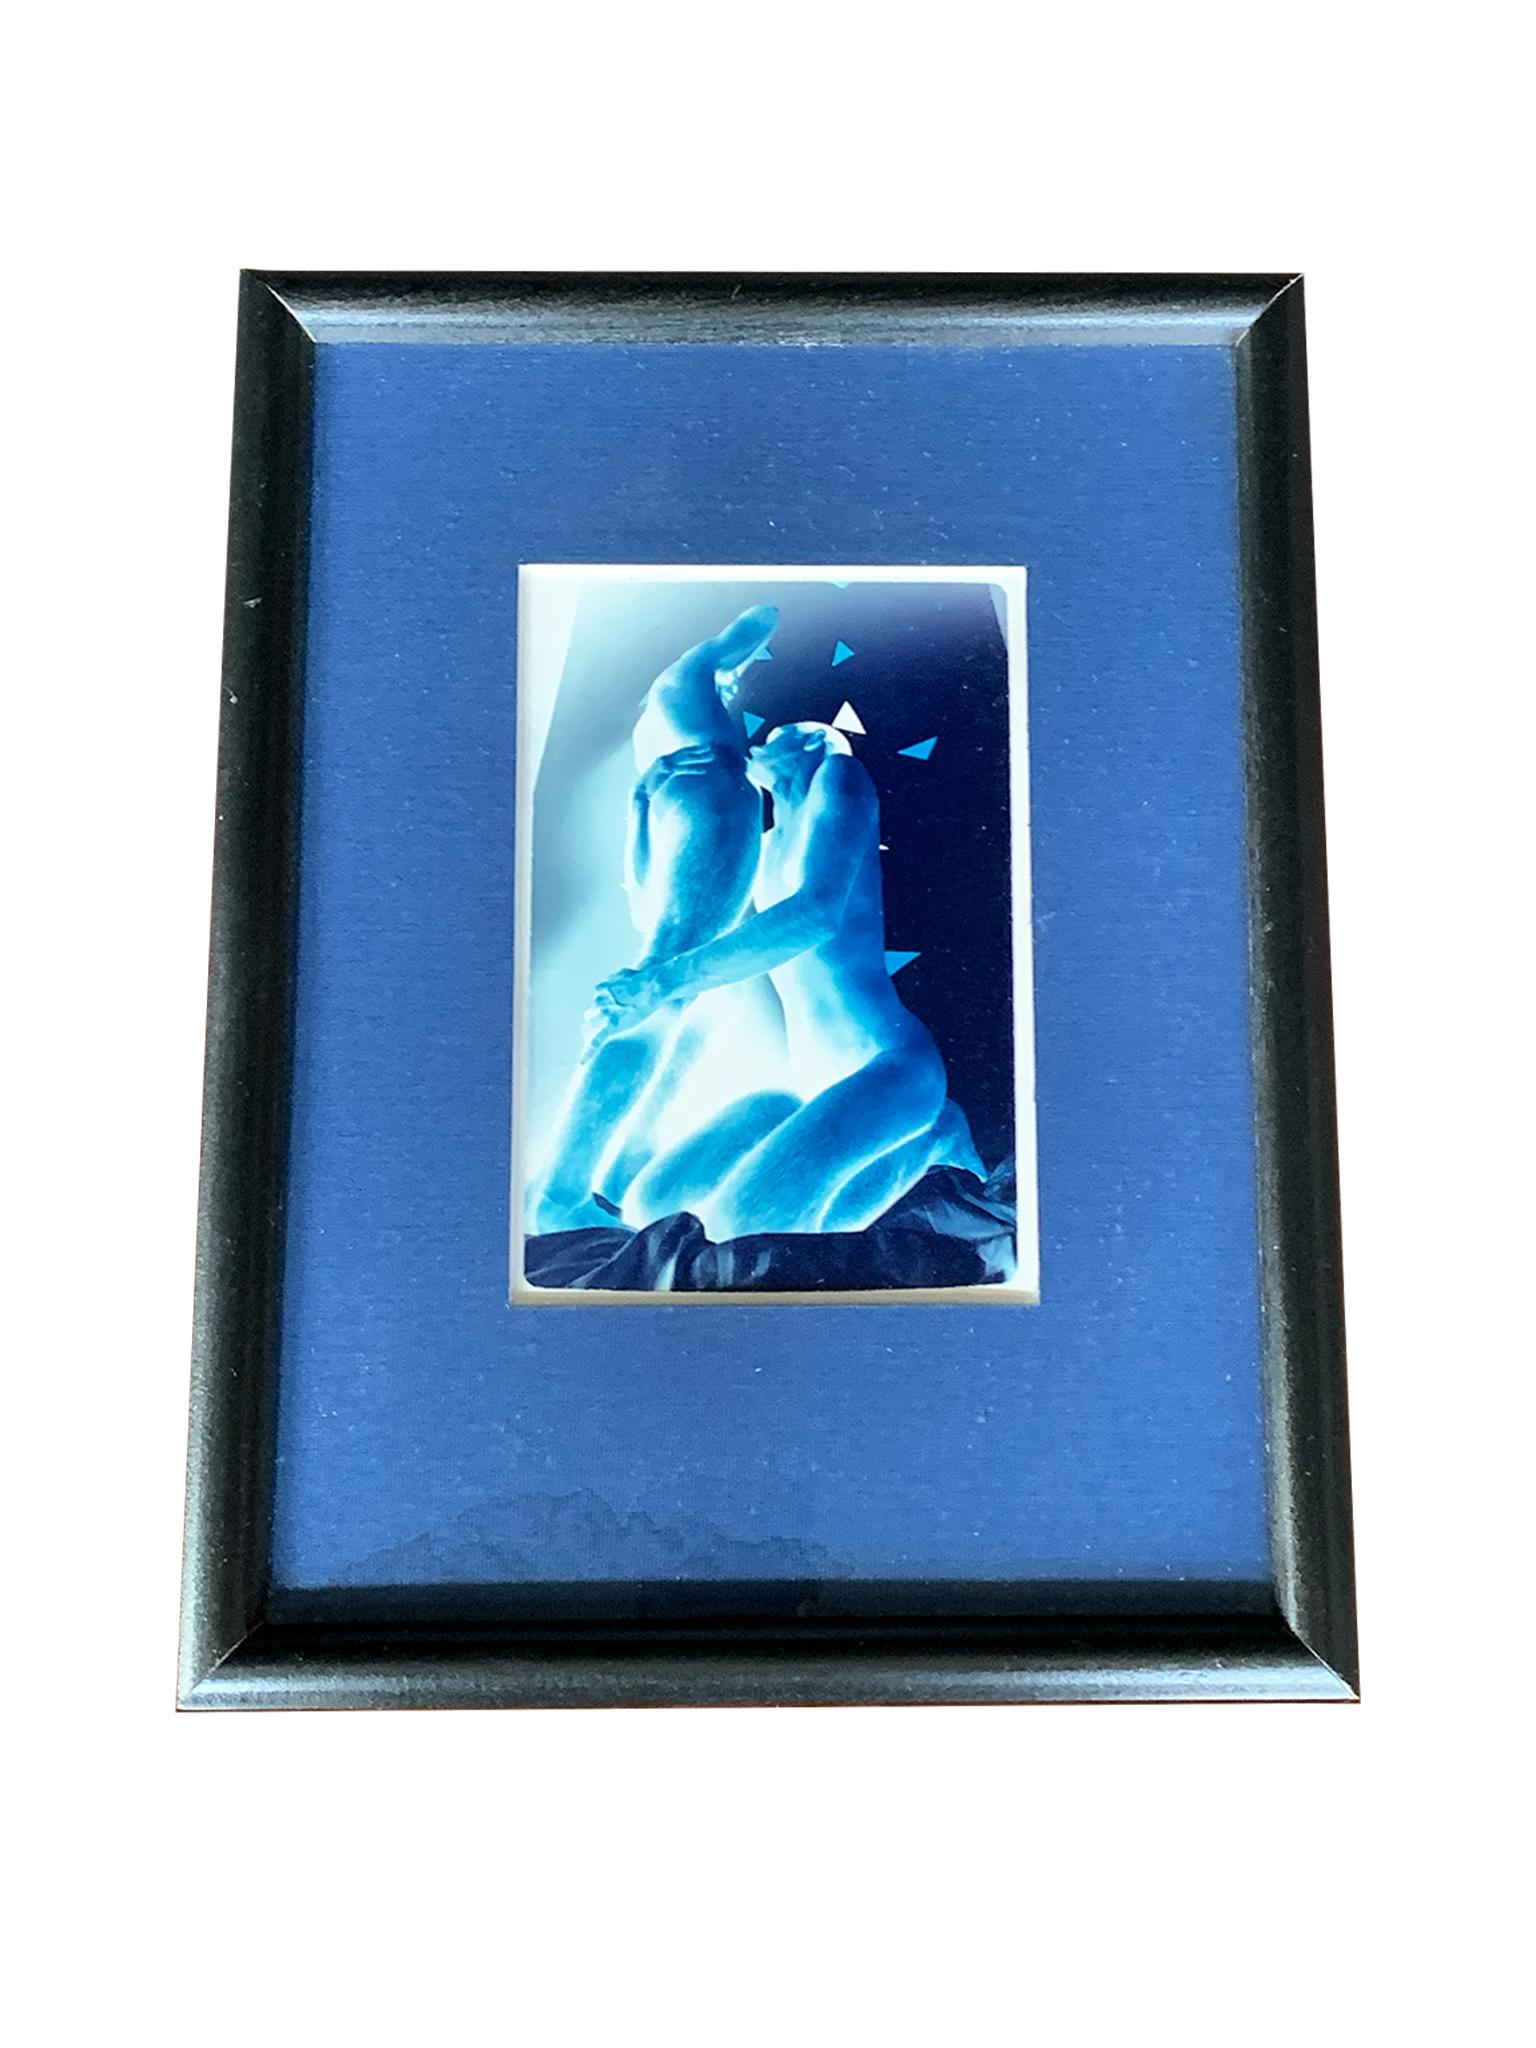 Cette petite photographie au cyanotype est due à l'artiste américain Steph Gorkii, aujourd'hui décédé. C'est une image magnifique et sensuelle de deux personnages dans une étreinte intime. Gorkii les représente en négatif, leurs corps abstraits et